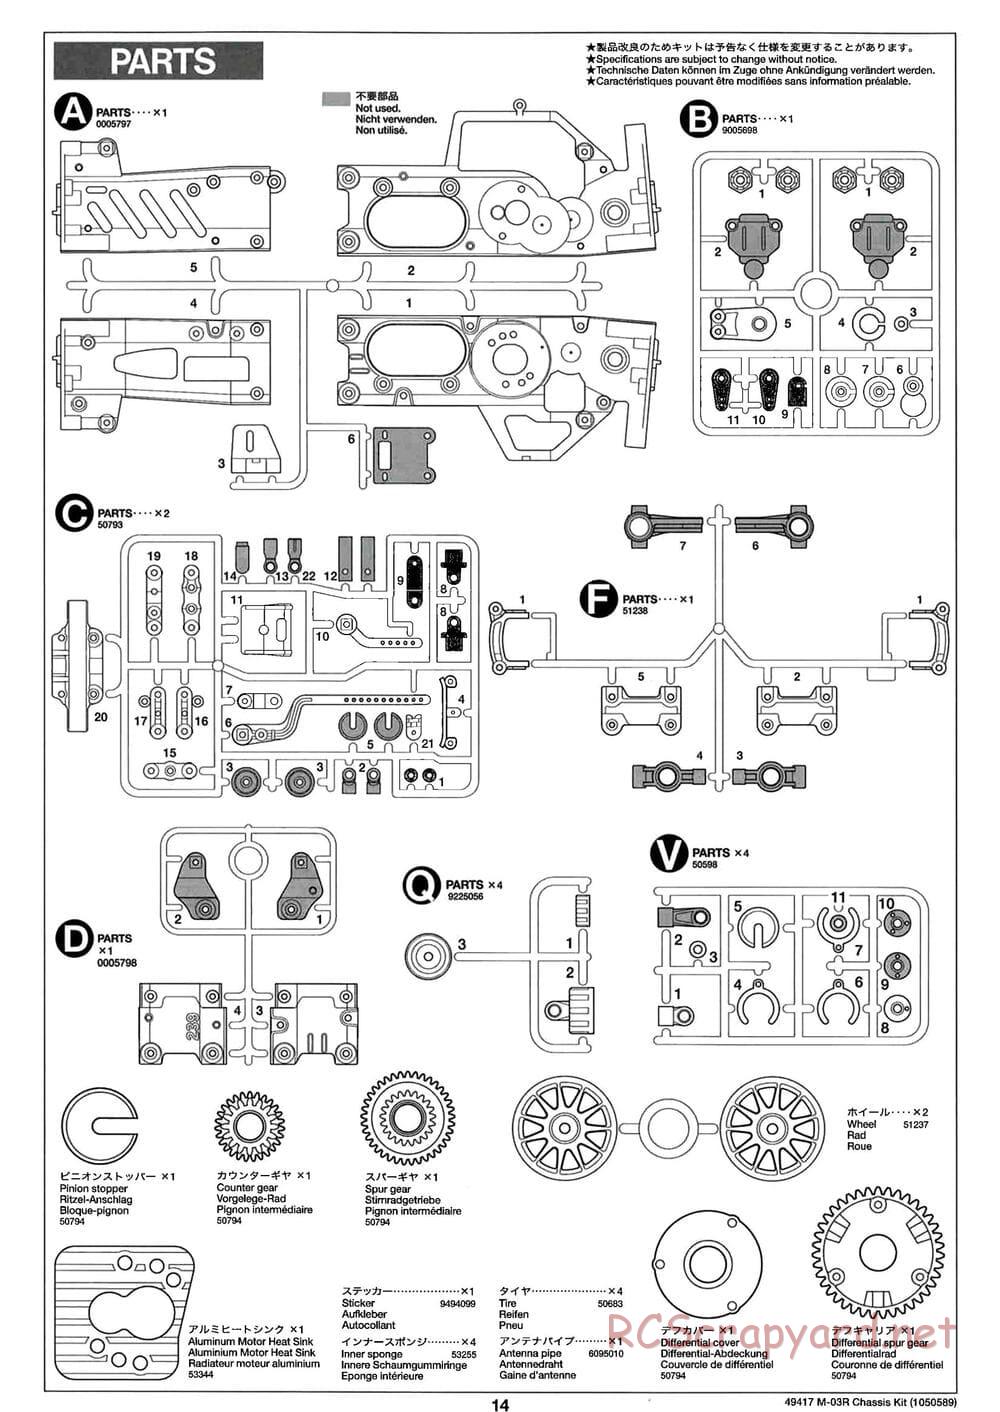 Tamiya - M-03R Chassis - Manual - Page 14